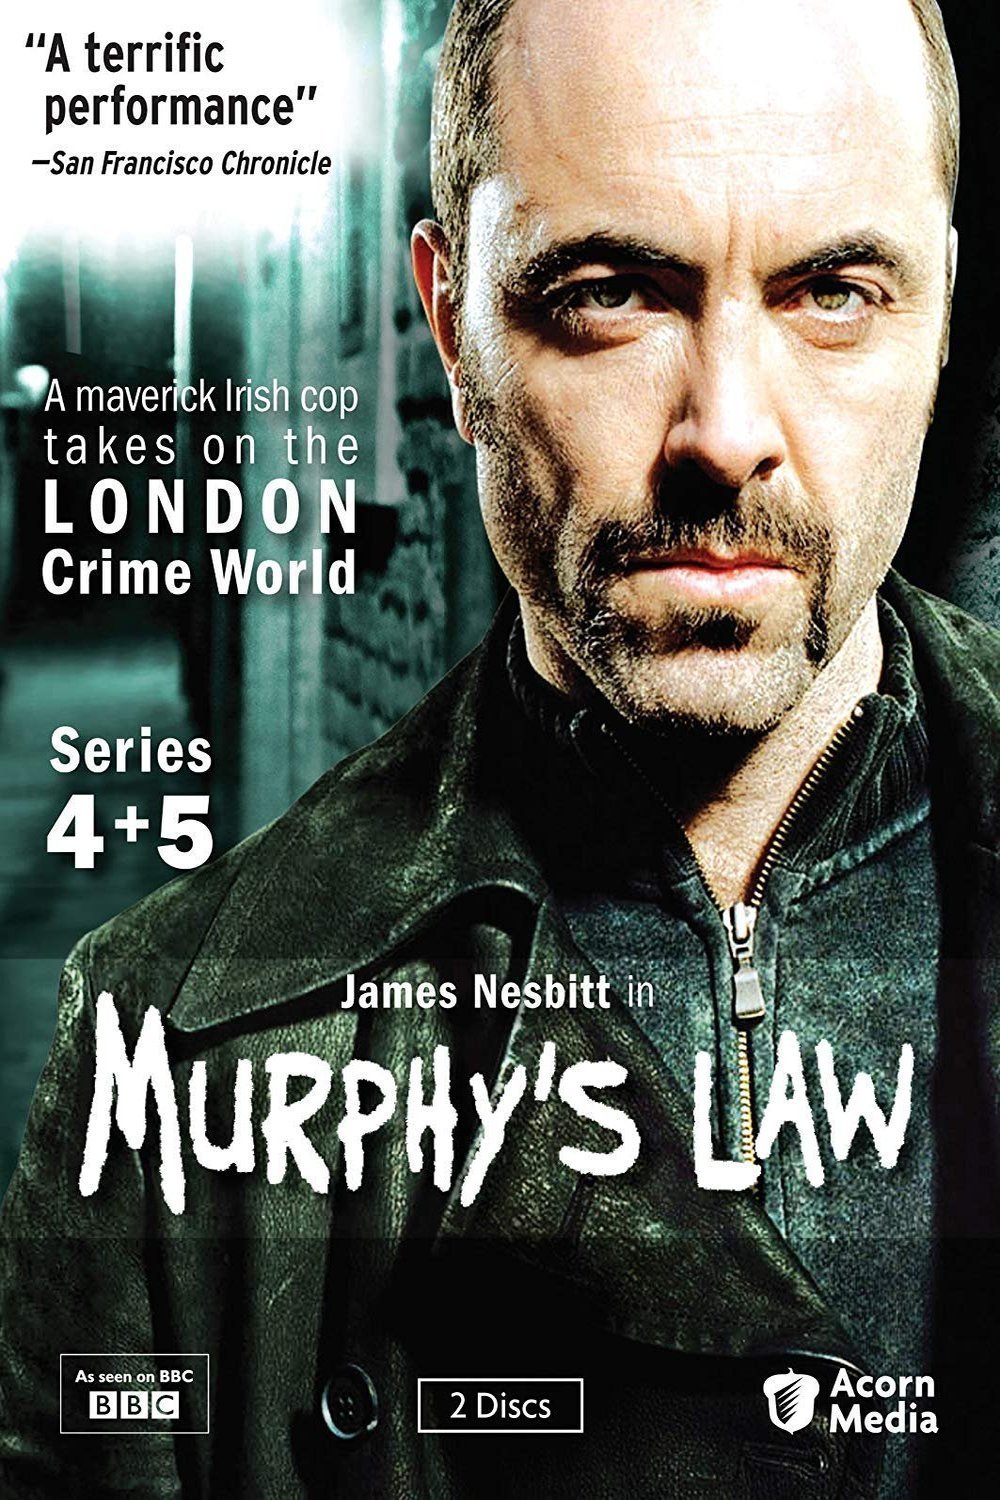 L'affiche du film Murphy's Law